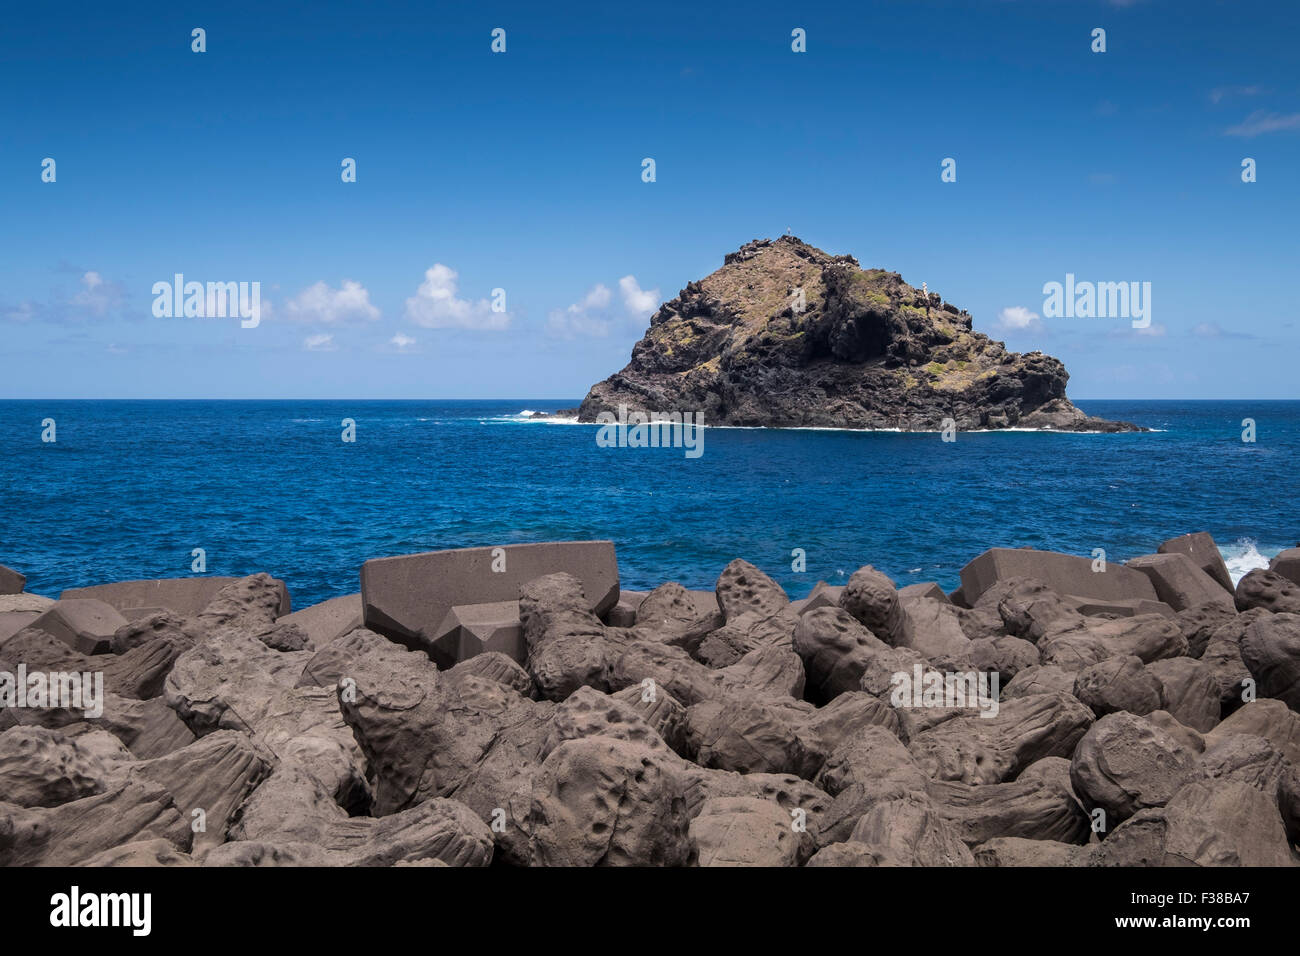 Vista la roccia di Garachico oltre le difese di mare sulla costa nord di Tenerife, Isole Canarie, Spagna. Bianco nero F38B9P Foto Stock